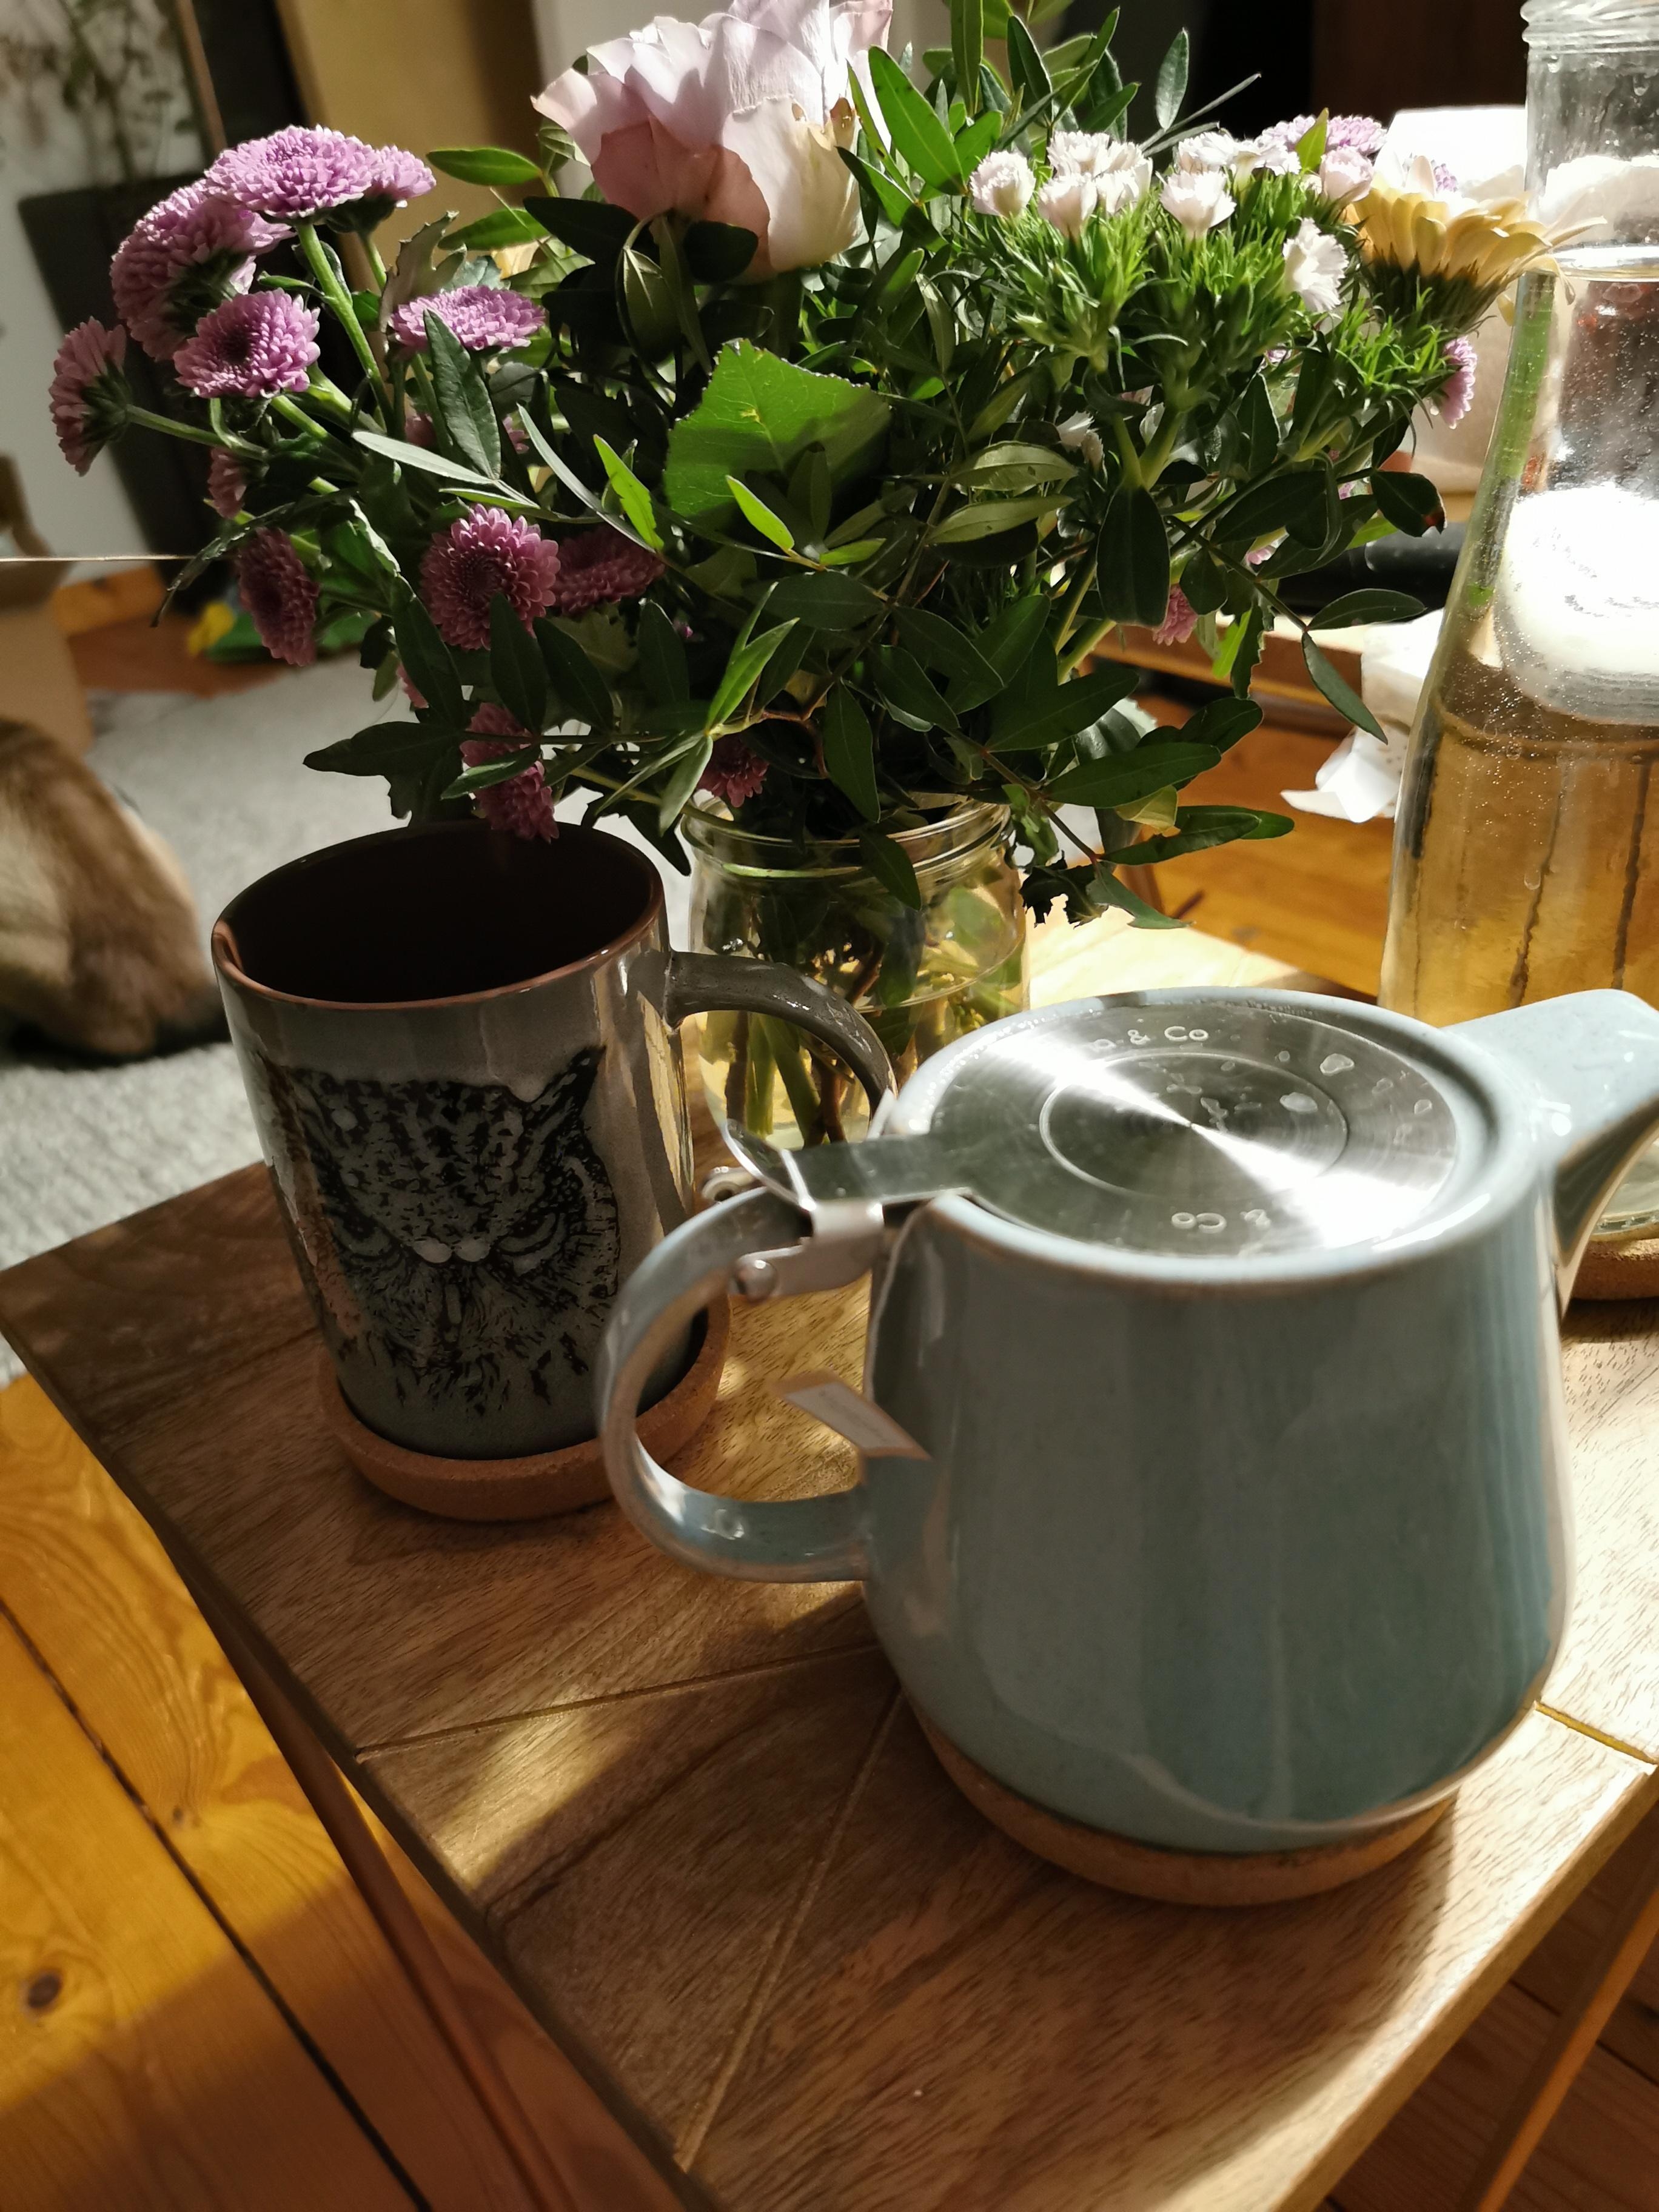 #metime #livingchallenge Entspannen bei einer Tasse Tee und ein paar frischen Blumen 